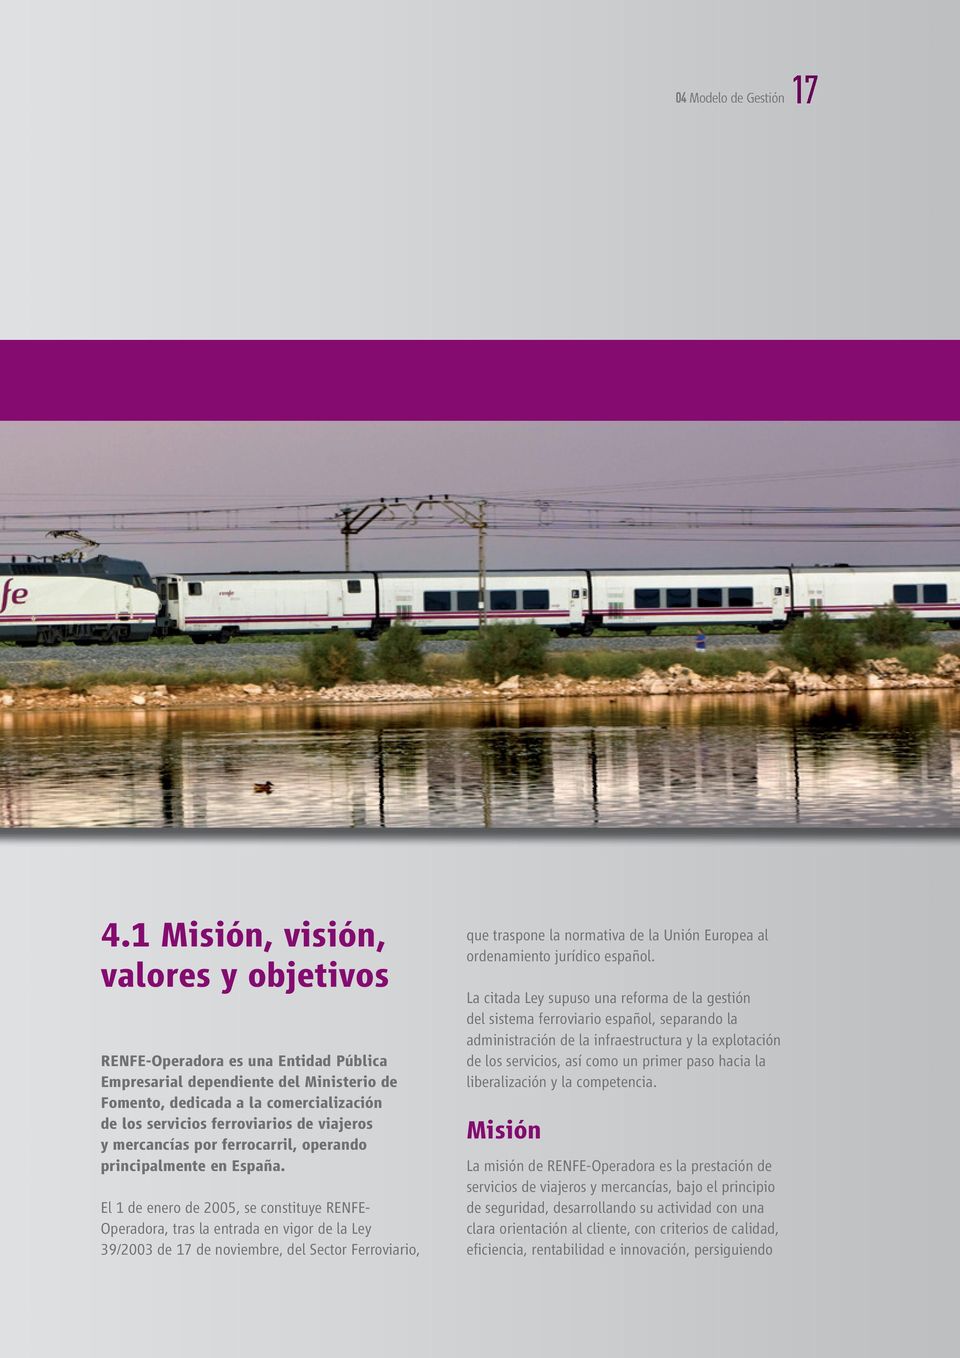 viajeros y mercancías por ferrocarril, operando principalmente en España.